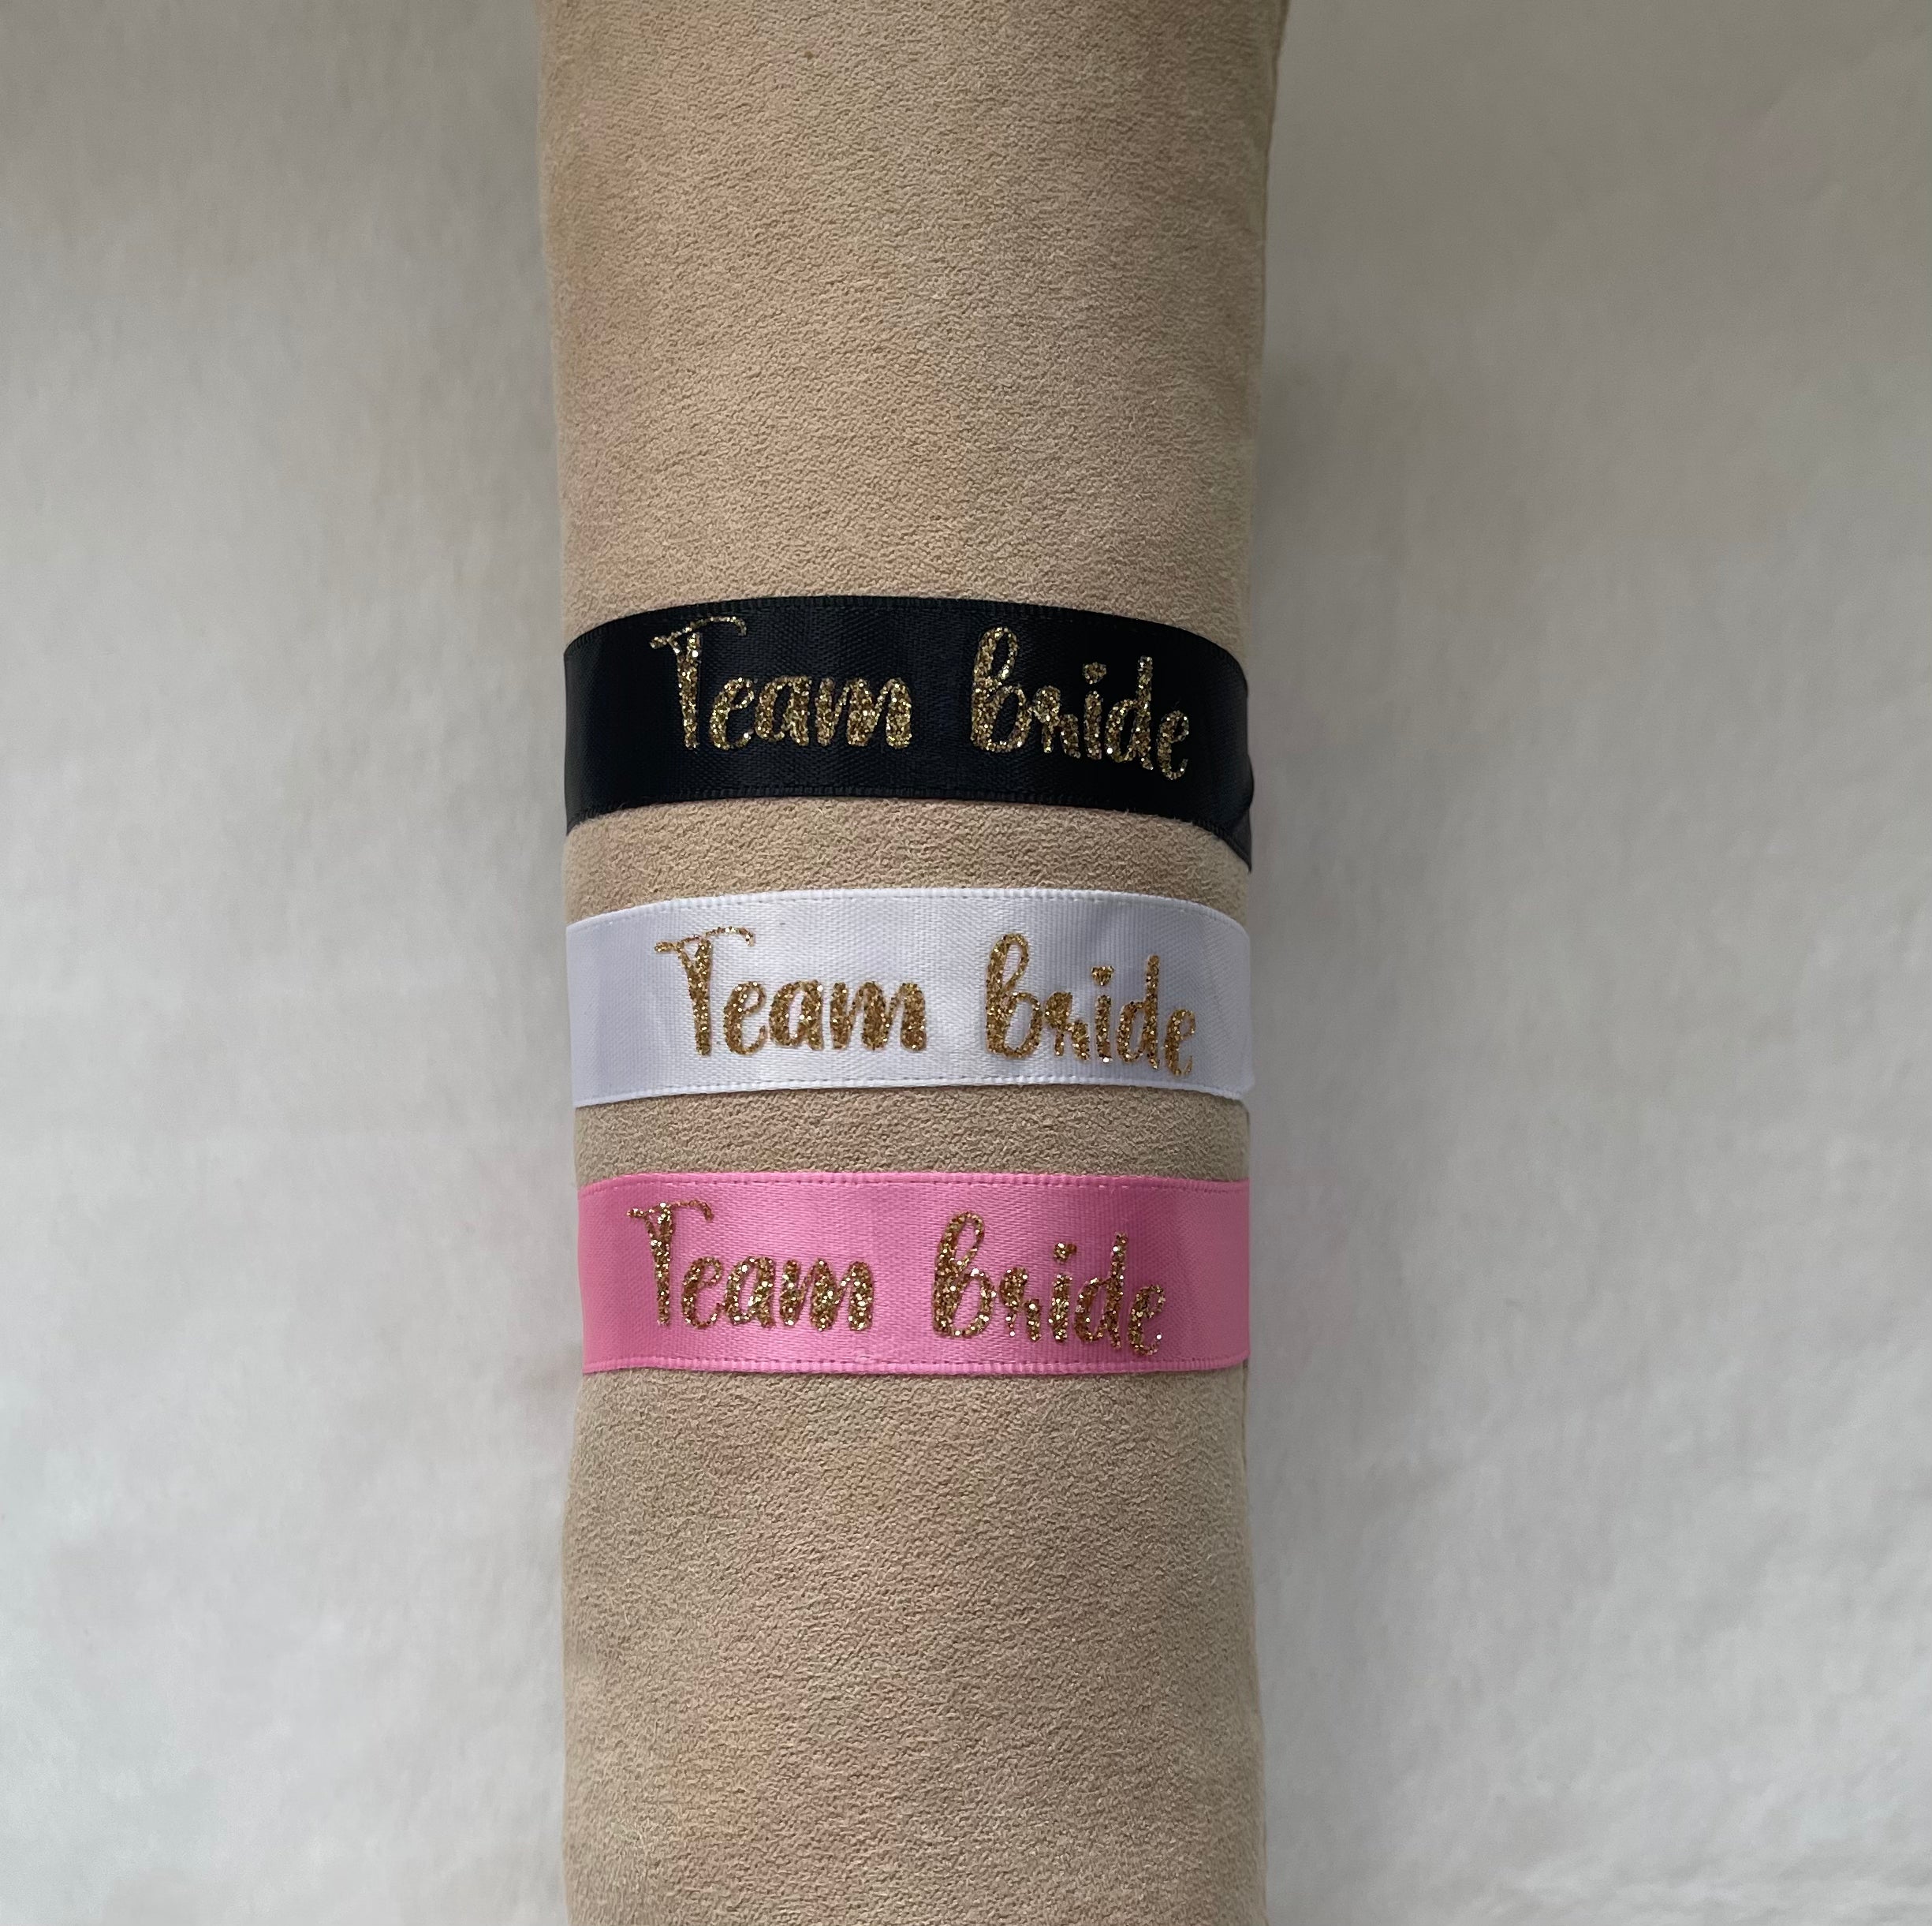 Présentation des 3 bracelets couleur noir, blanc et rose avec inscription "Team bride"